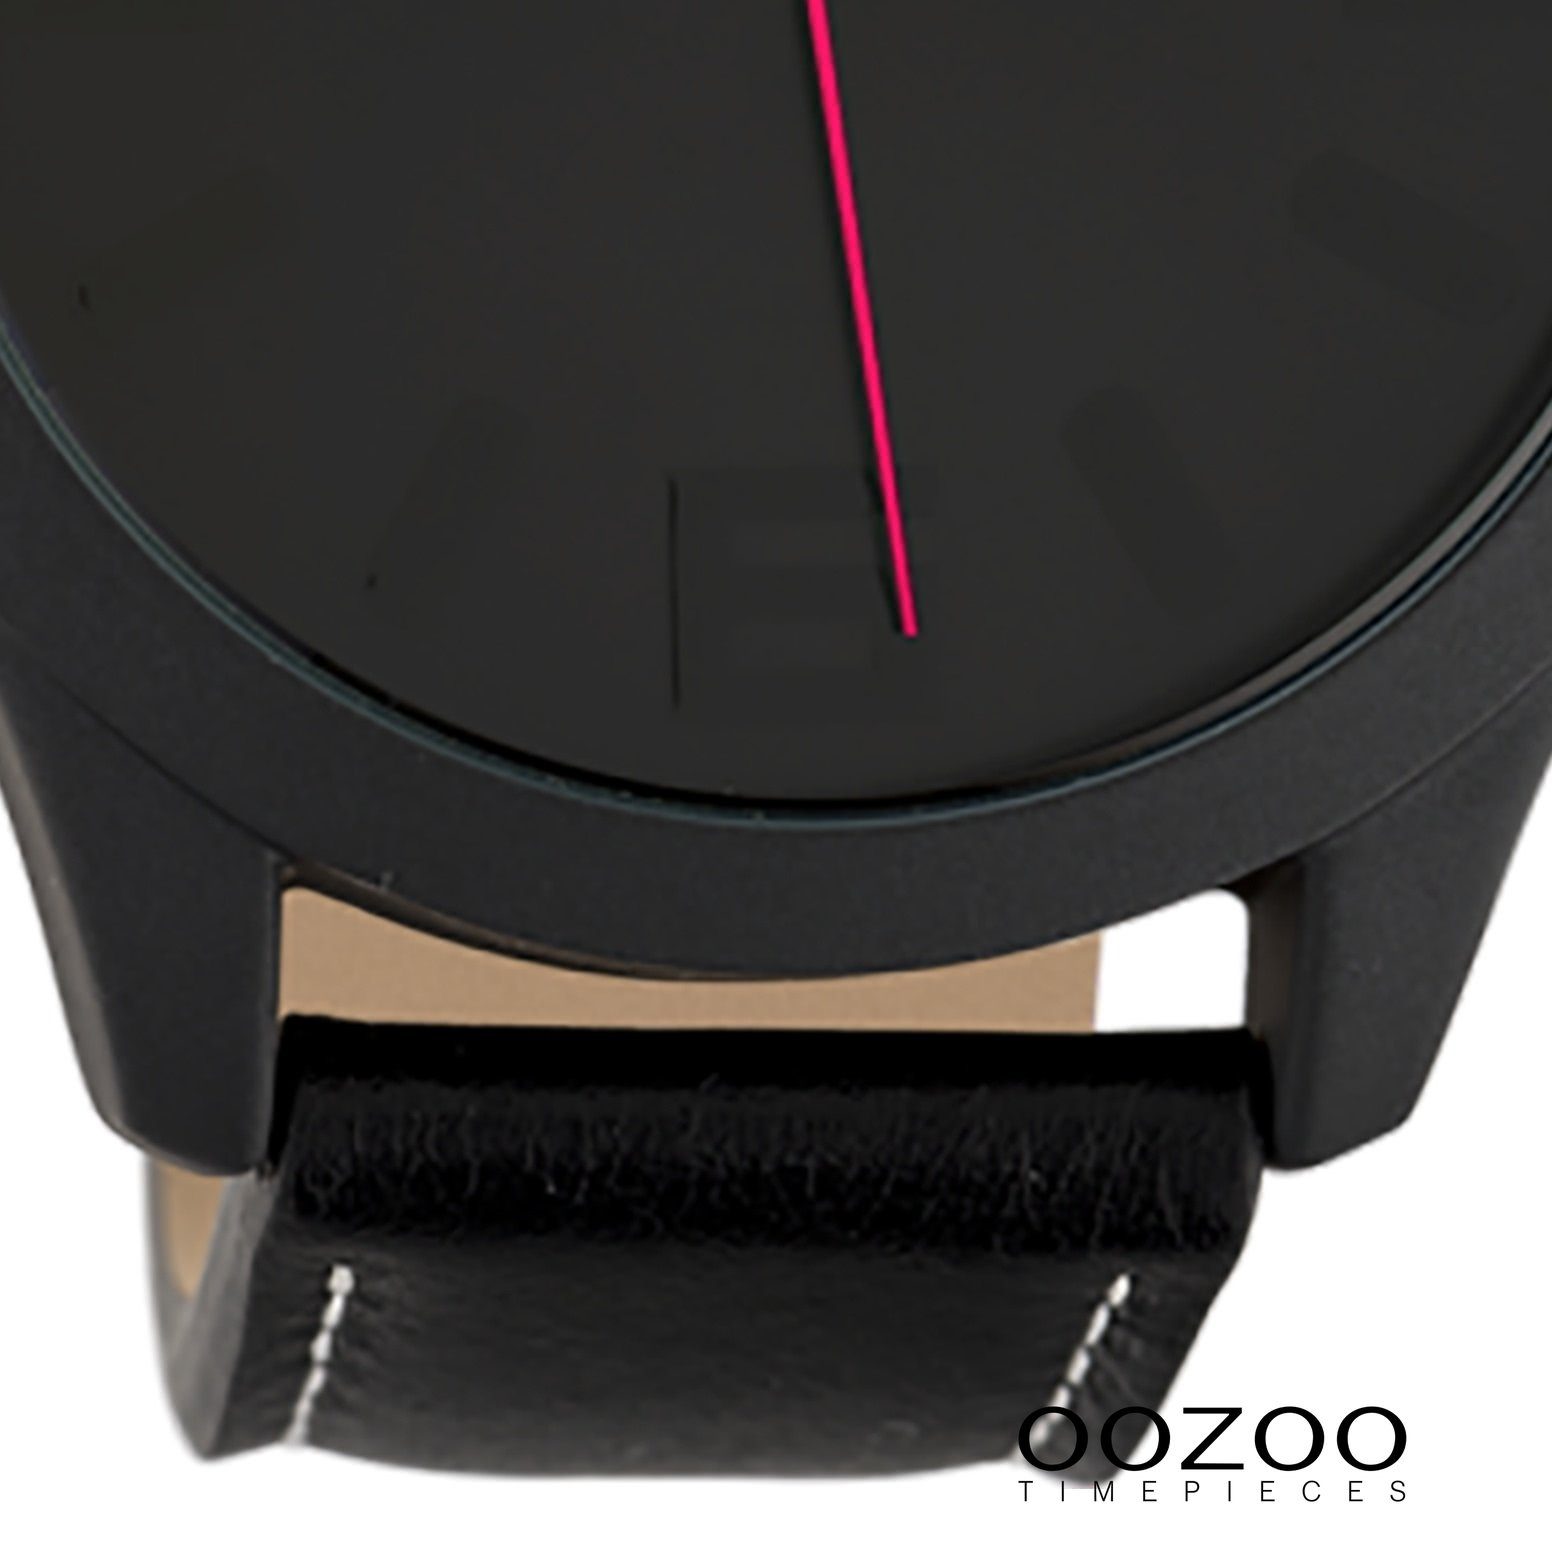 Armbanduhr schwarz, groß rund, Quarzuhr 45mm) Oozoo Damen Damenuhr Lederarmband, Fashion-Style (ca. OOZOO